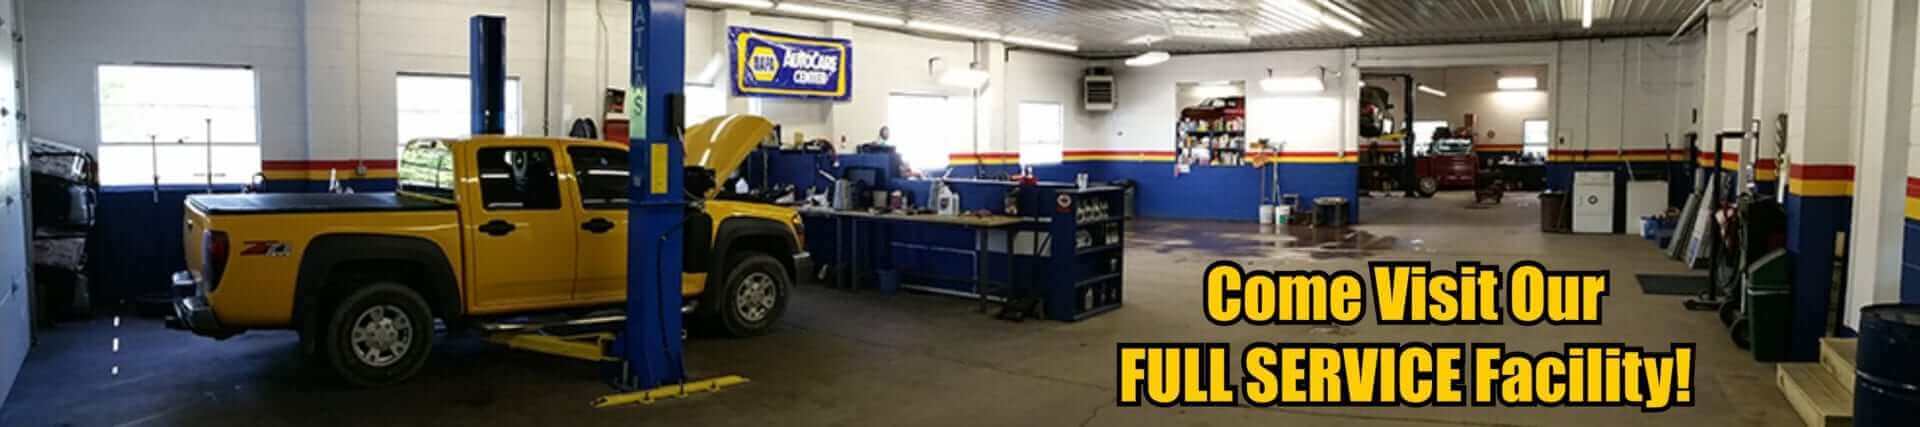 Service facility - Auto repair service in Bedford PA